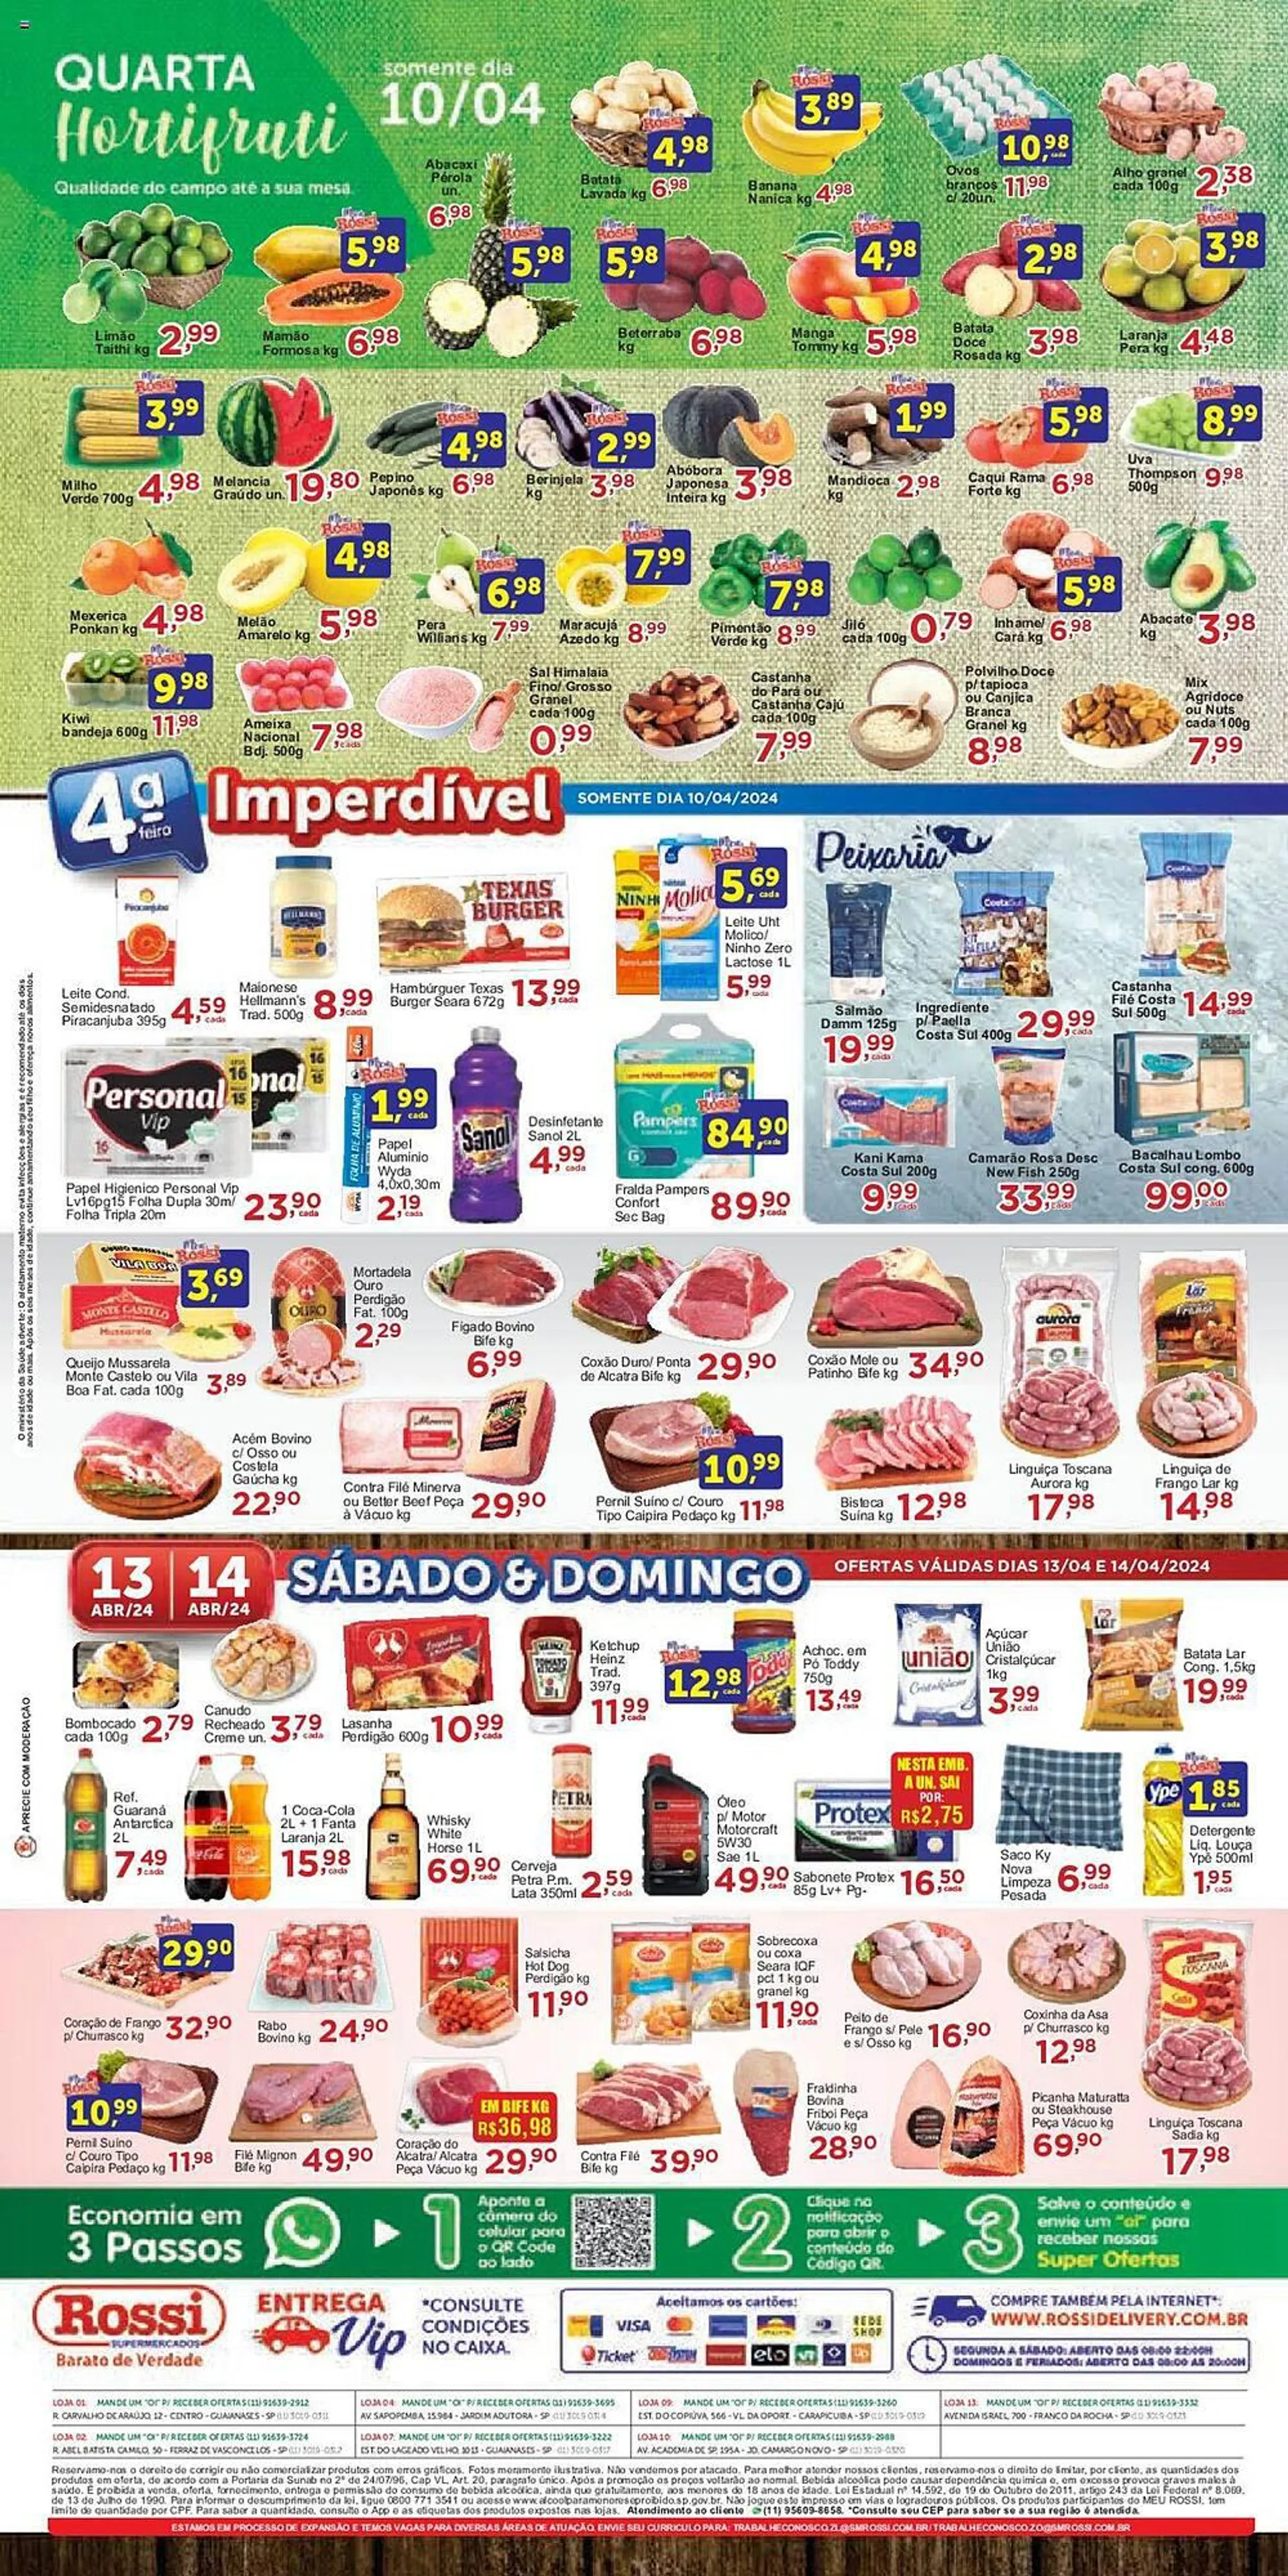 Encarte de Catálogo Rossi Supermercado 10 de abril até 16 de abril 2024 - Pagina 4